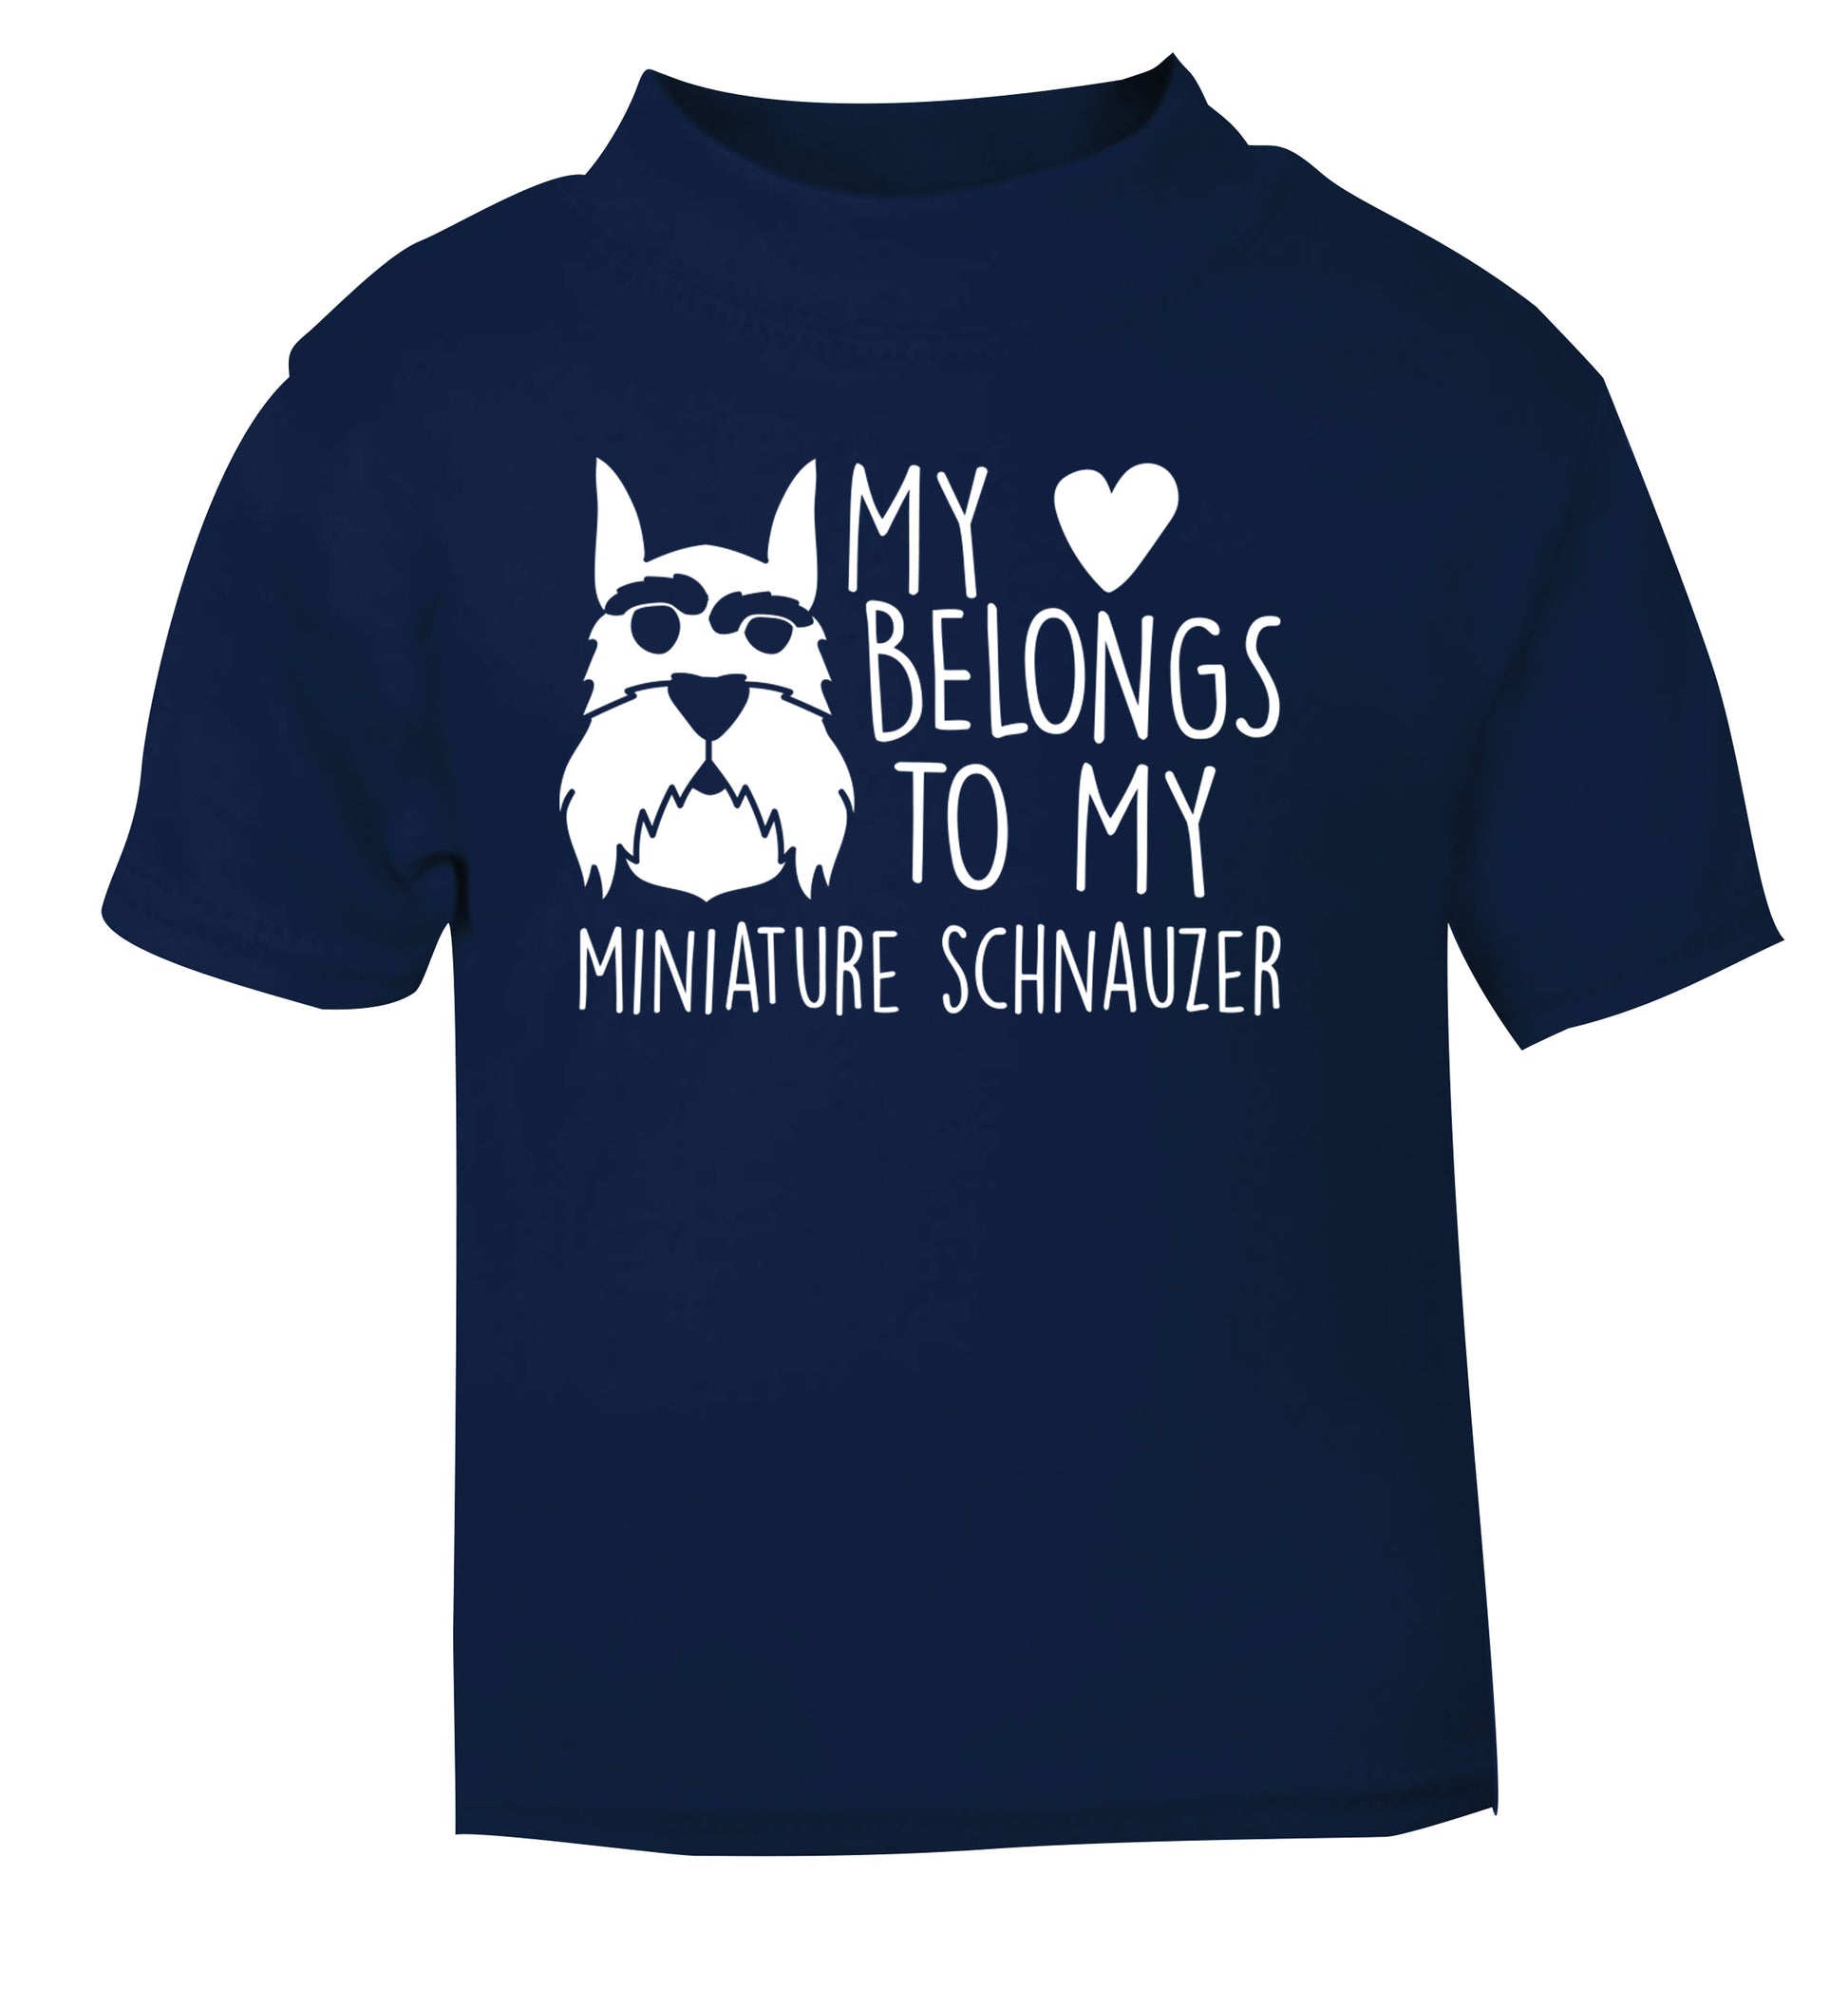 My heart belongs to my miniature schnauzer navy Baby Toddler Tshirt 2 Years